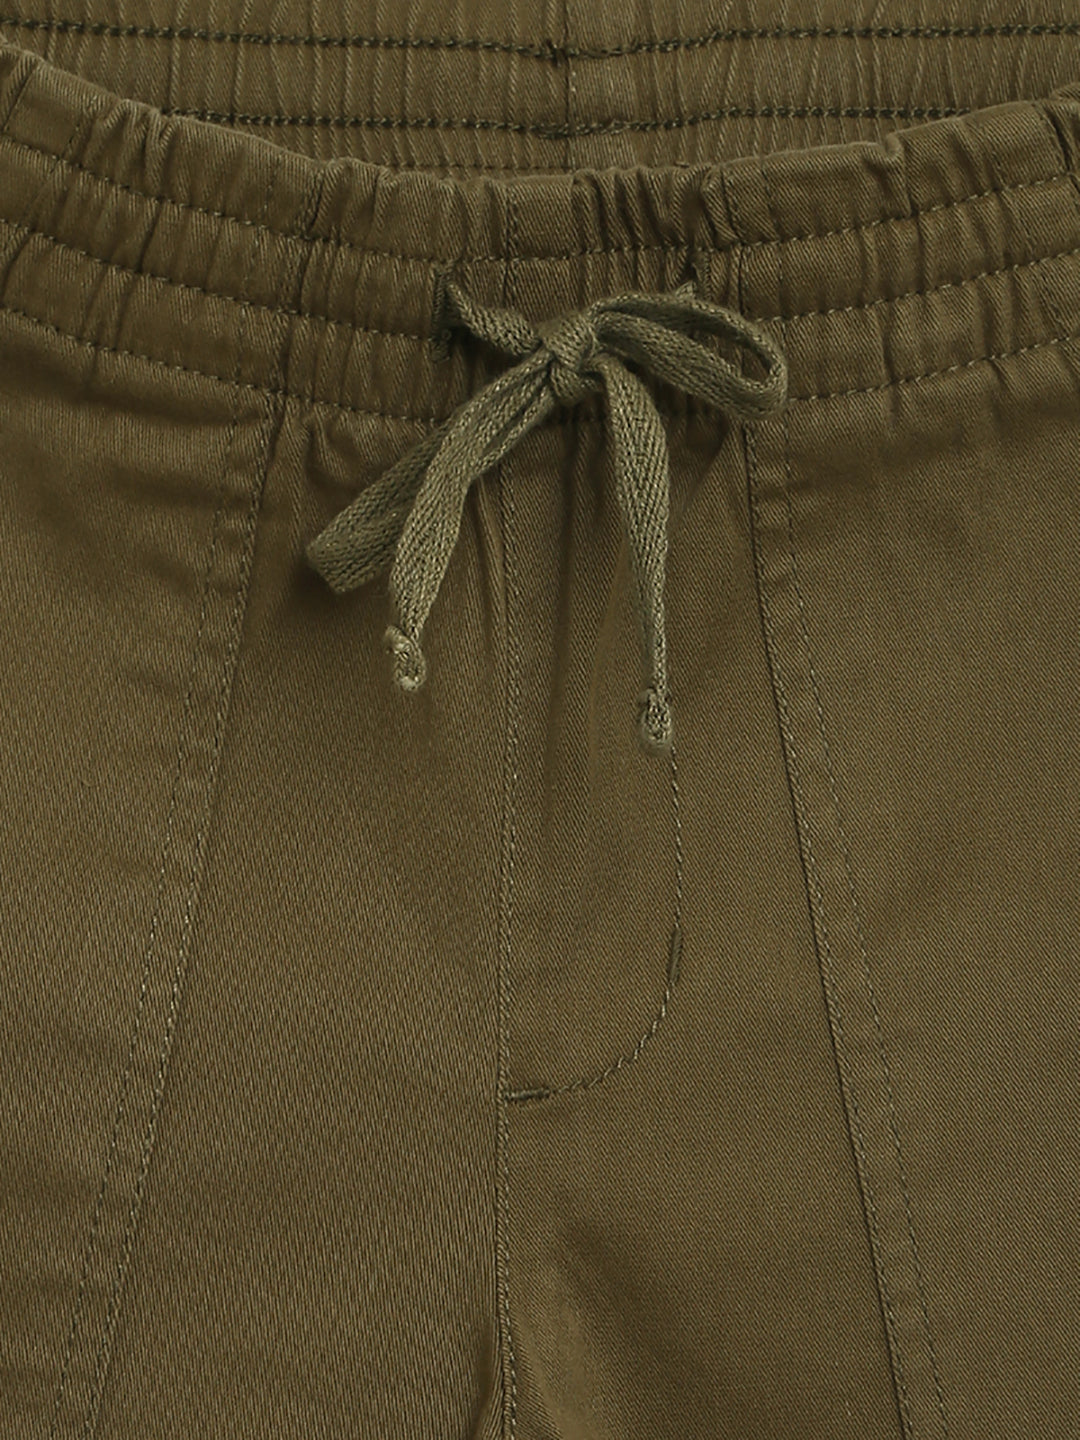 Poly Cotton Men Boys School Uniform Pants Waist Size 32